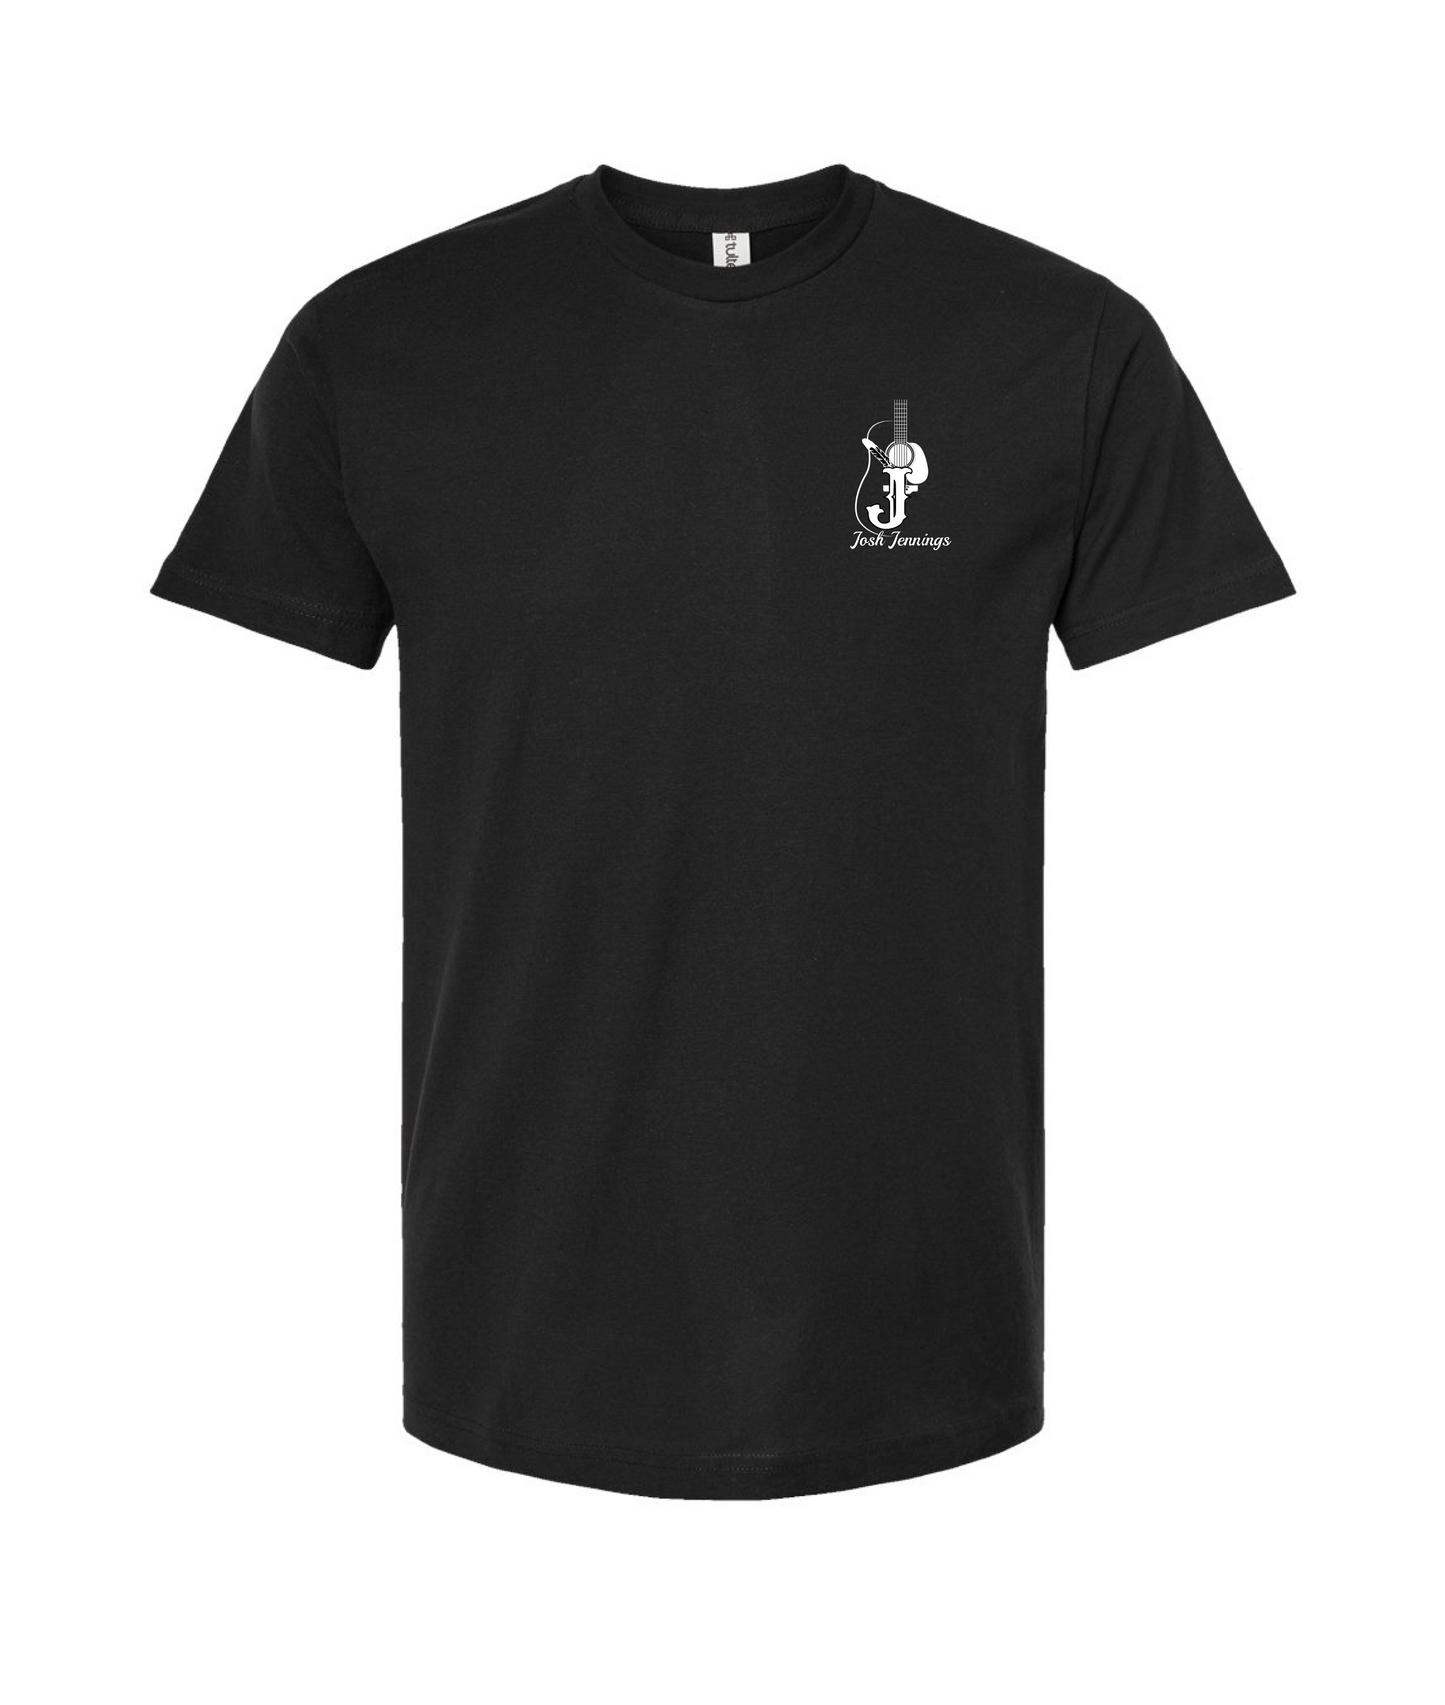 Josh Jennings - Logo - Black T-Shirt